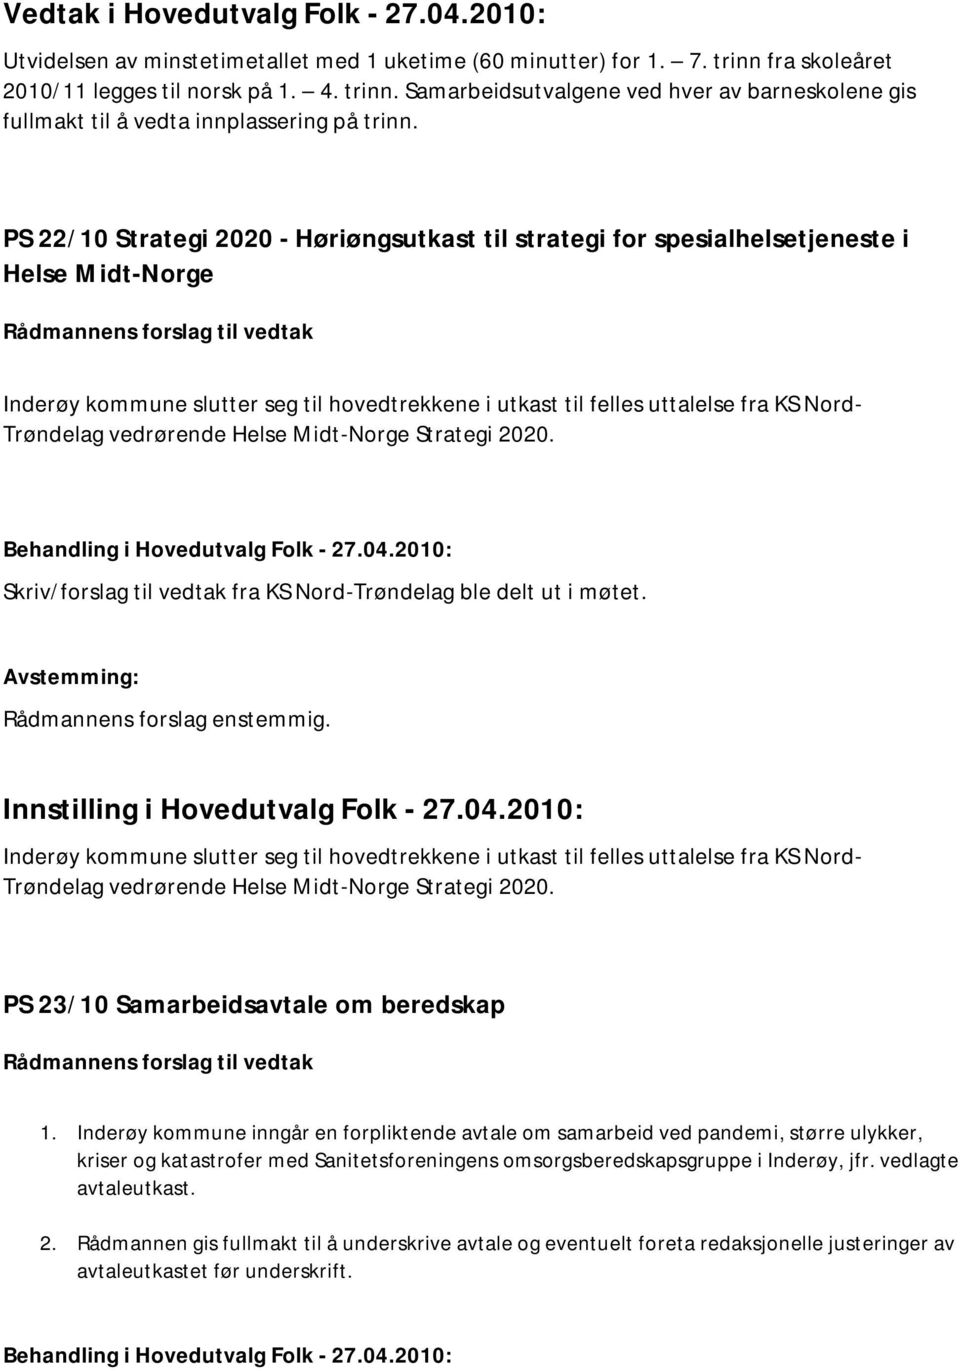 PS 22/10 Strategi 2020 - Høriøngsutkast til strategi for spesialhelsetjeneste i Helse Midt-Norge Inderøy kommune slutter seg til hovedtrekkene i utkast til felles uttalelse fra KS Nord- Trøndelag